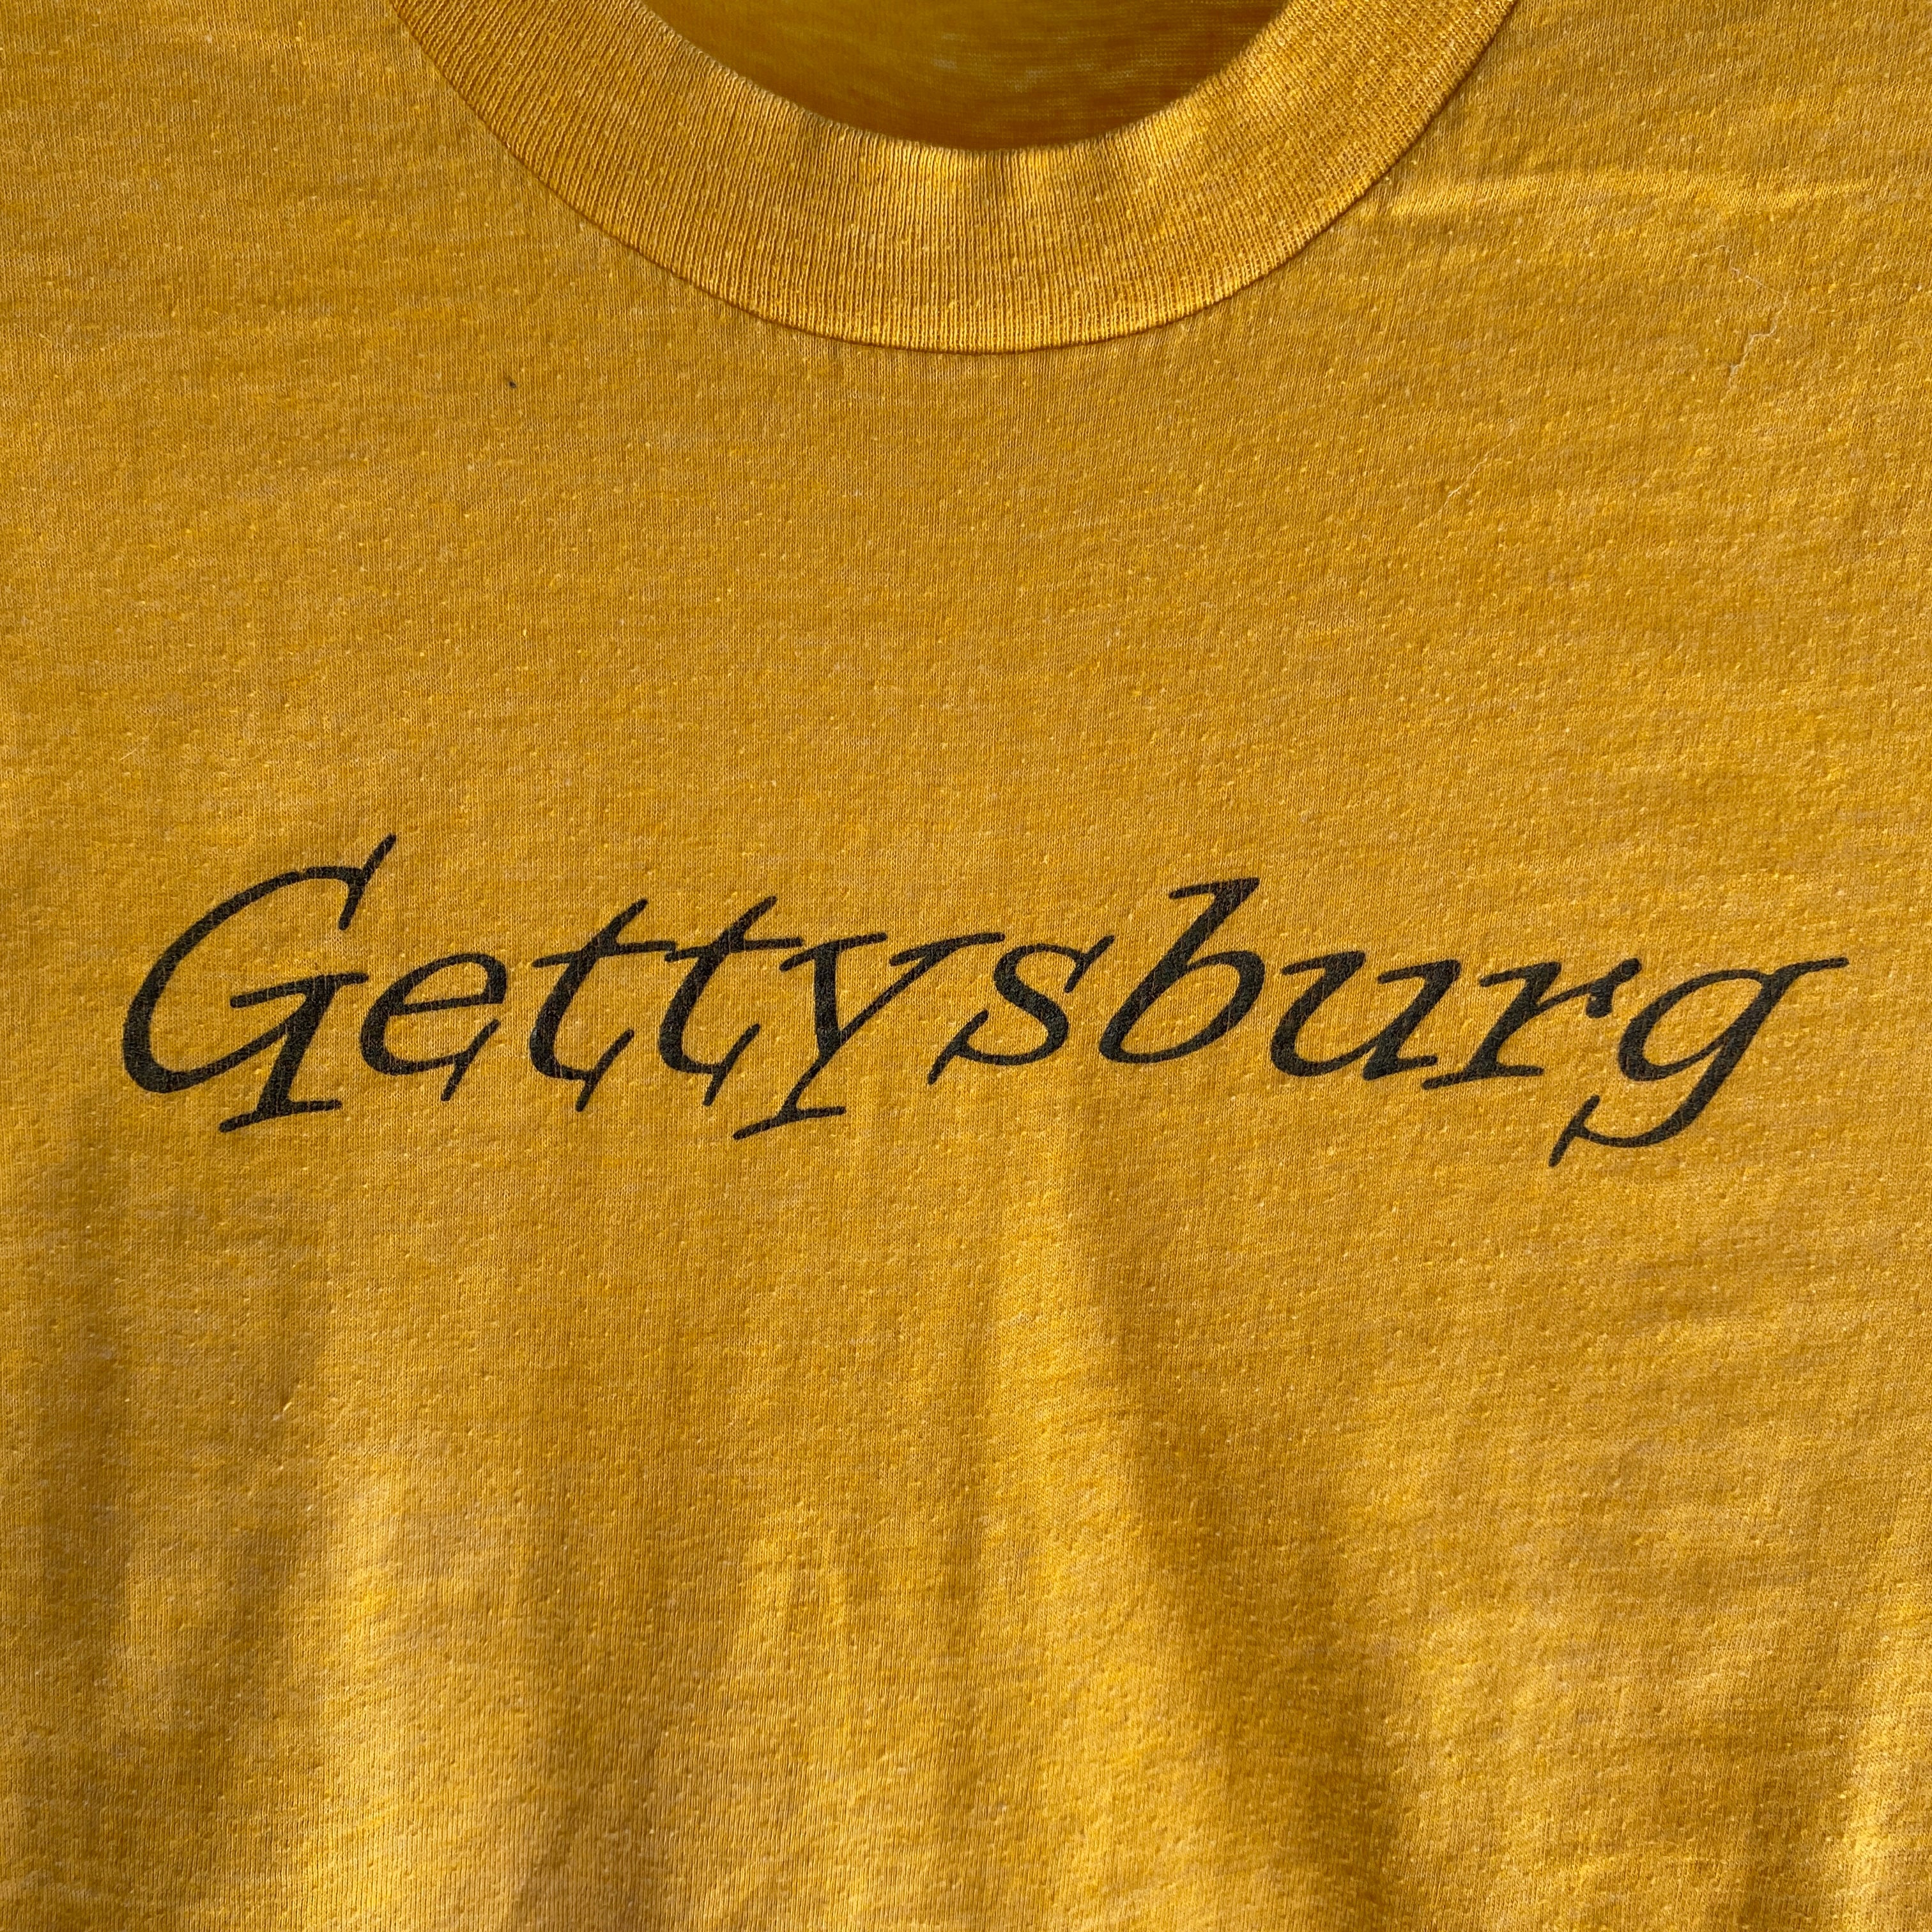 1970s Gettysburg Tourist T-Shirt in Mustard Yellow